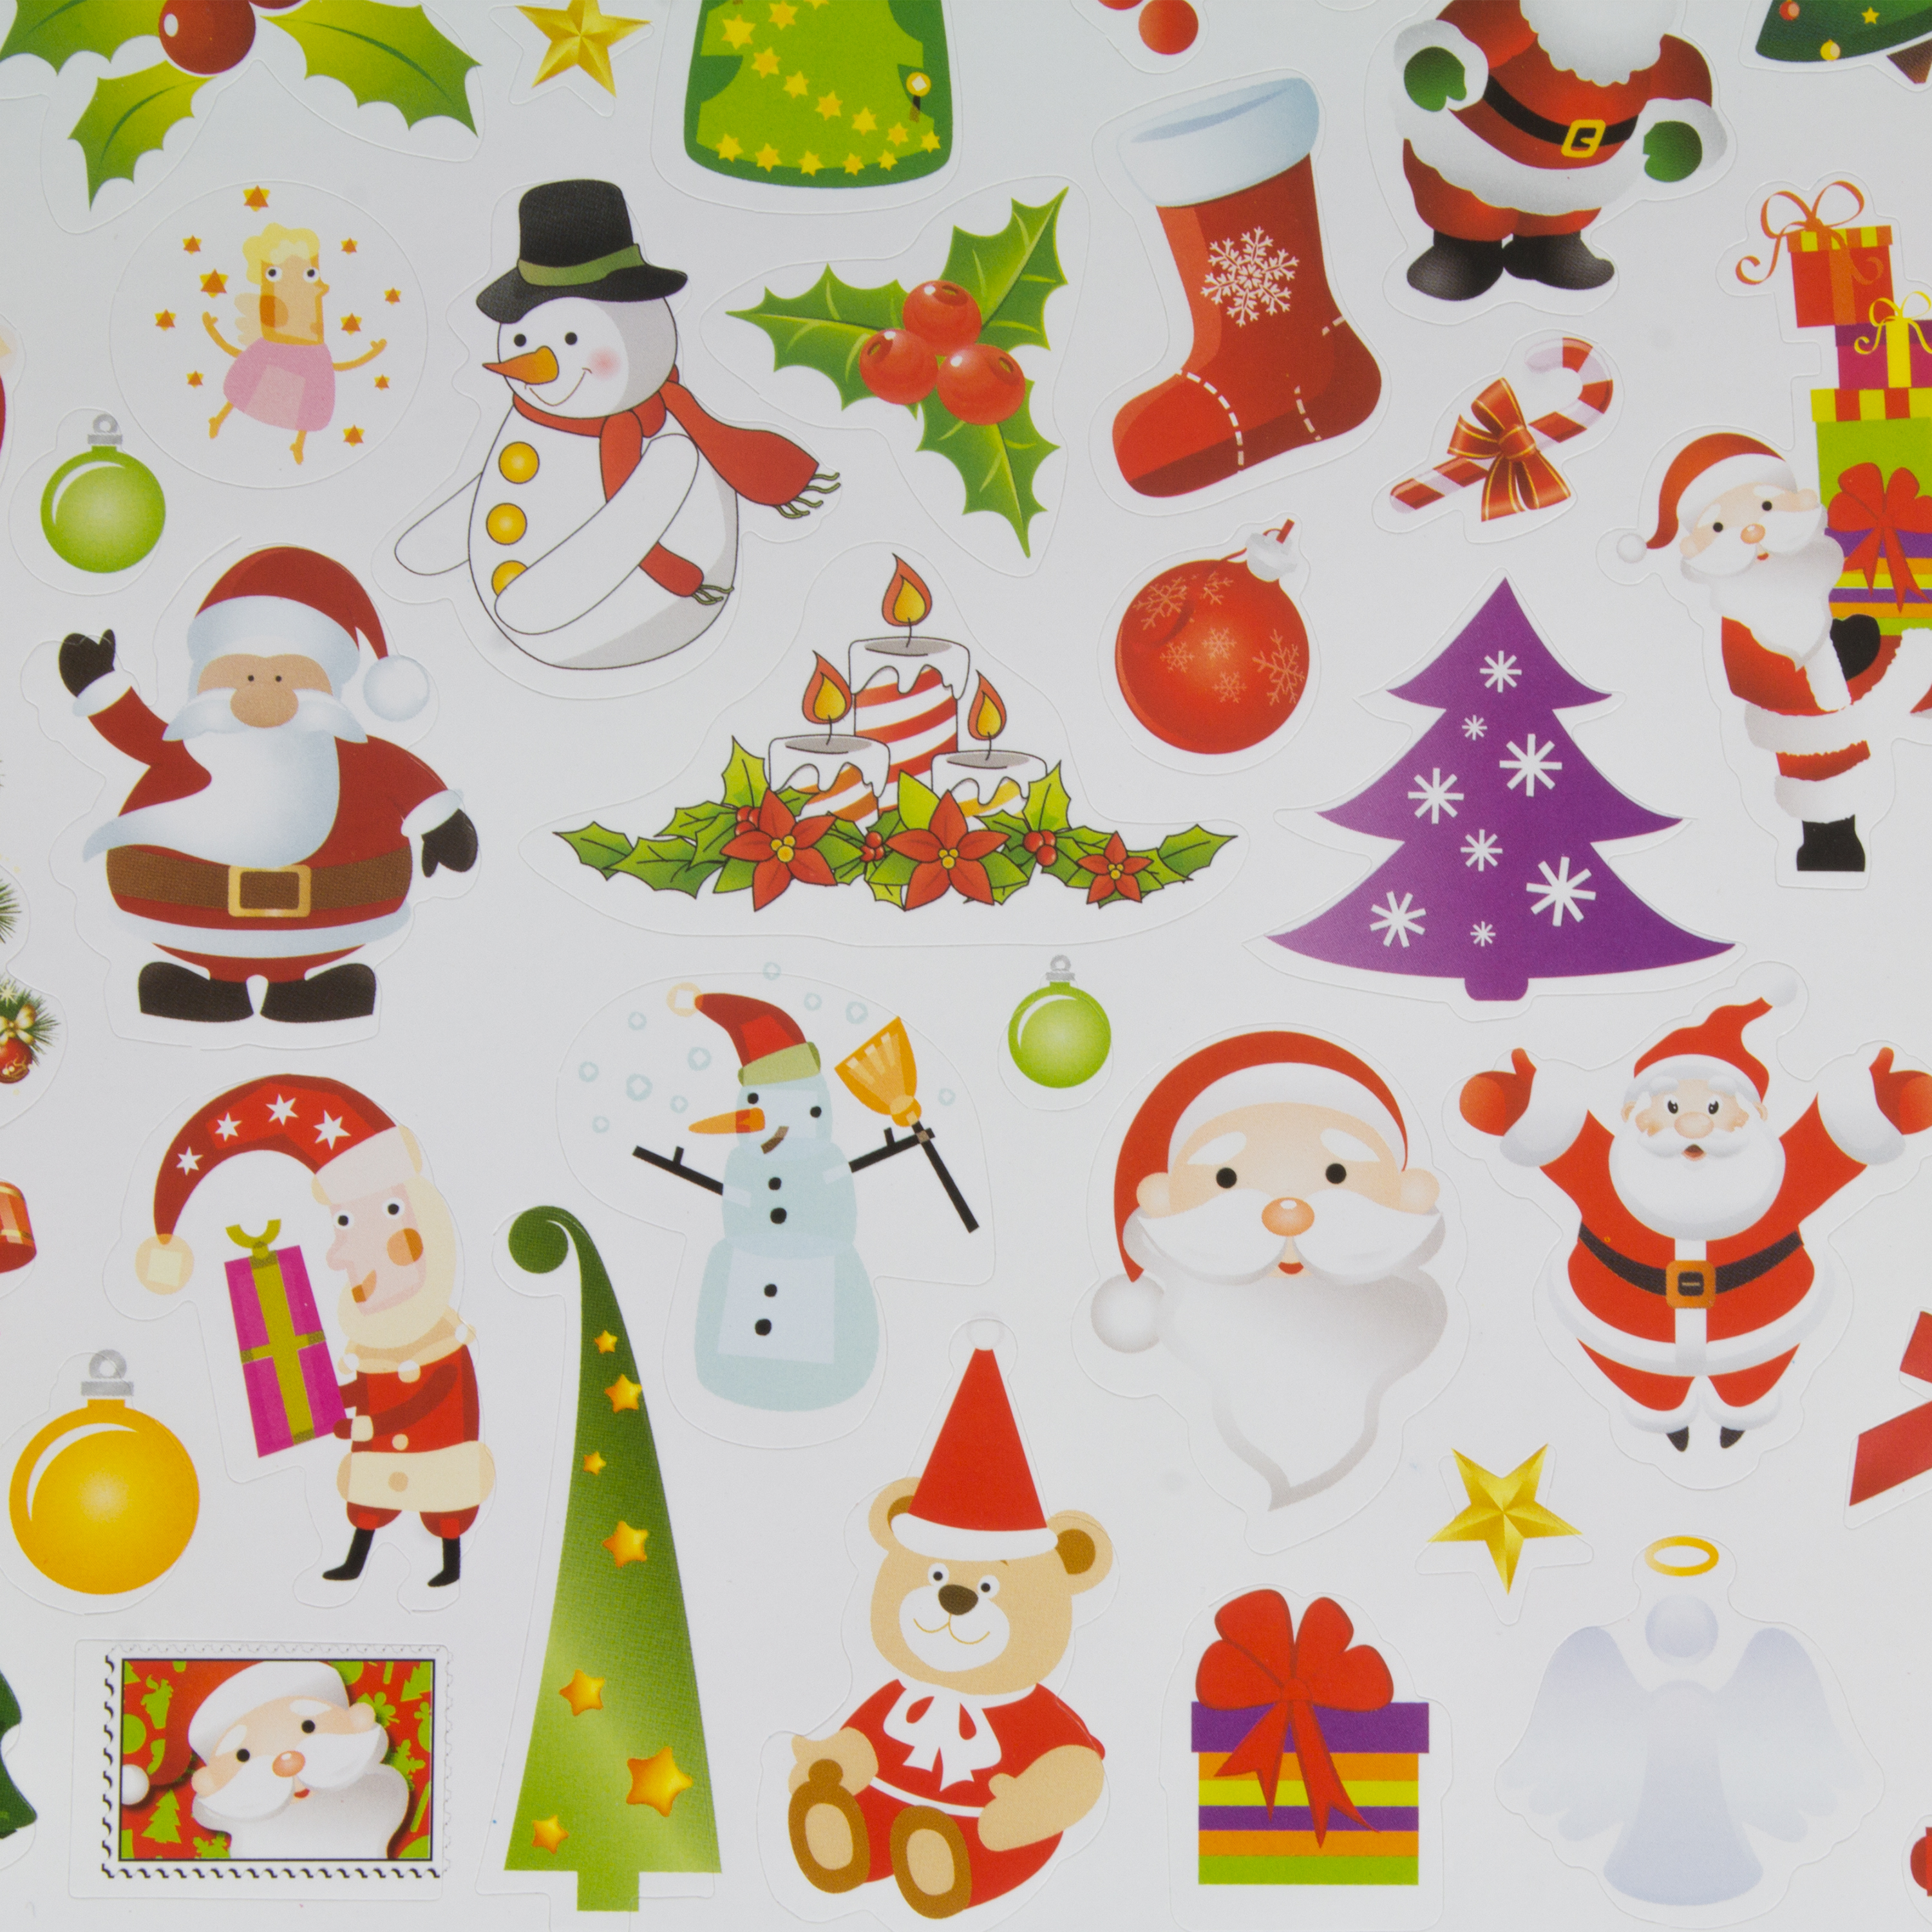 Motiv-Sticker 'Weihnachten', 1.000 Stück